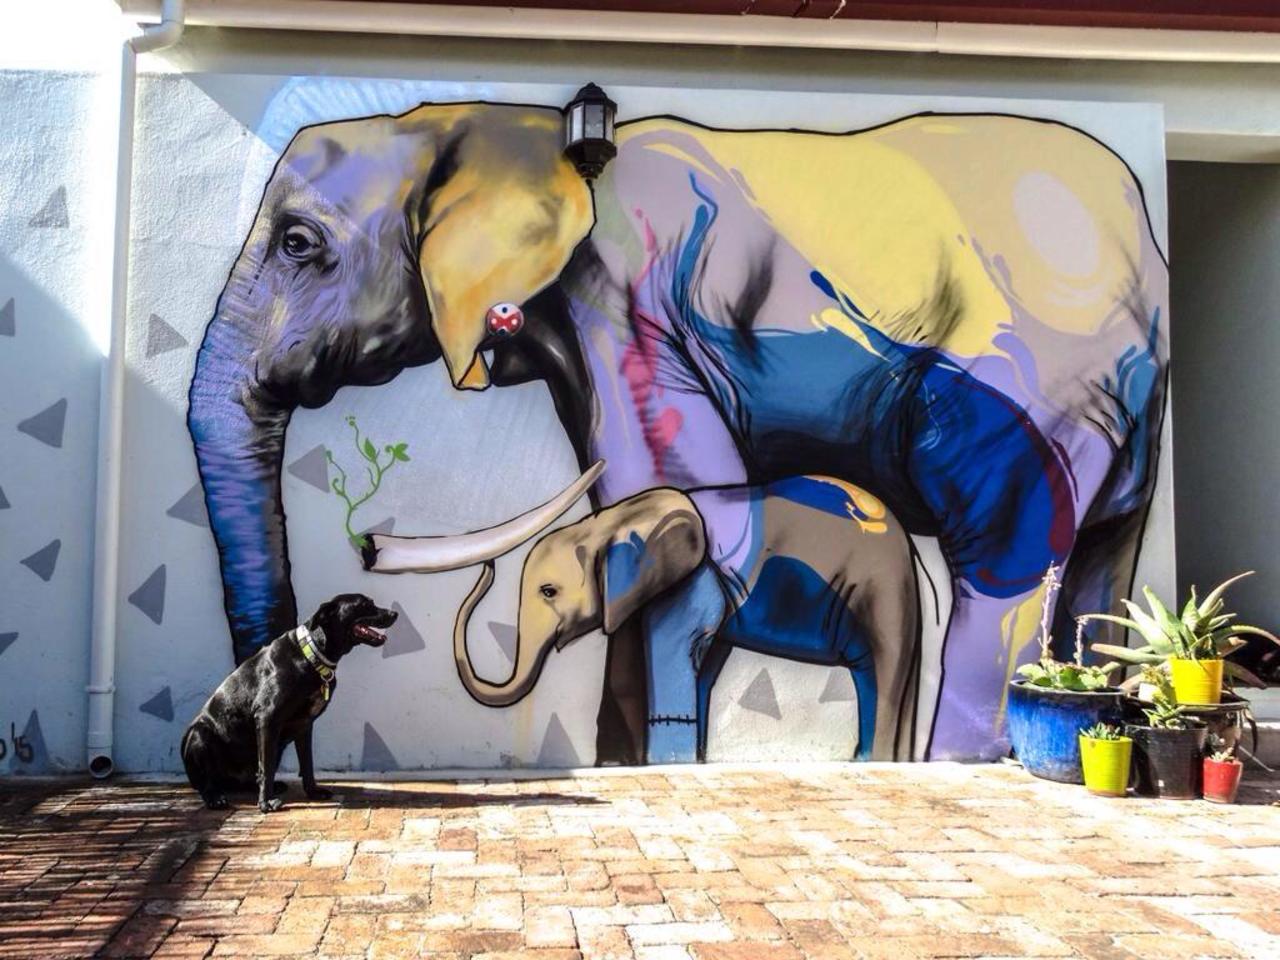 #Elephant Latest nature in Street Art piece by Falko Paints In Cape Town
#art #mural #graffiti #streetart http://t.co/ETLJmZkLea”